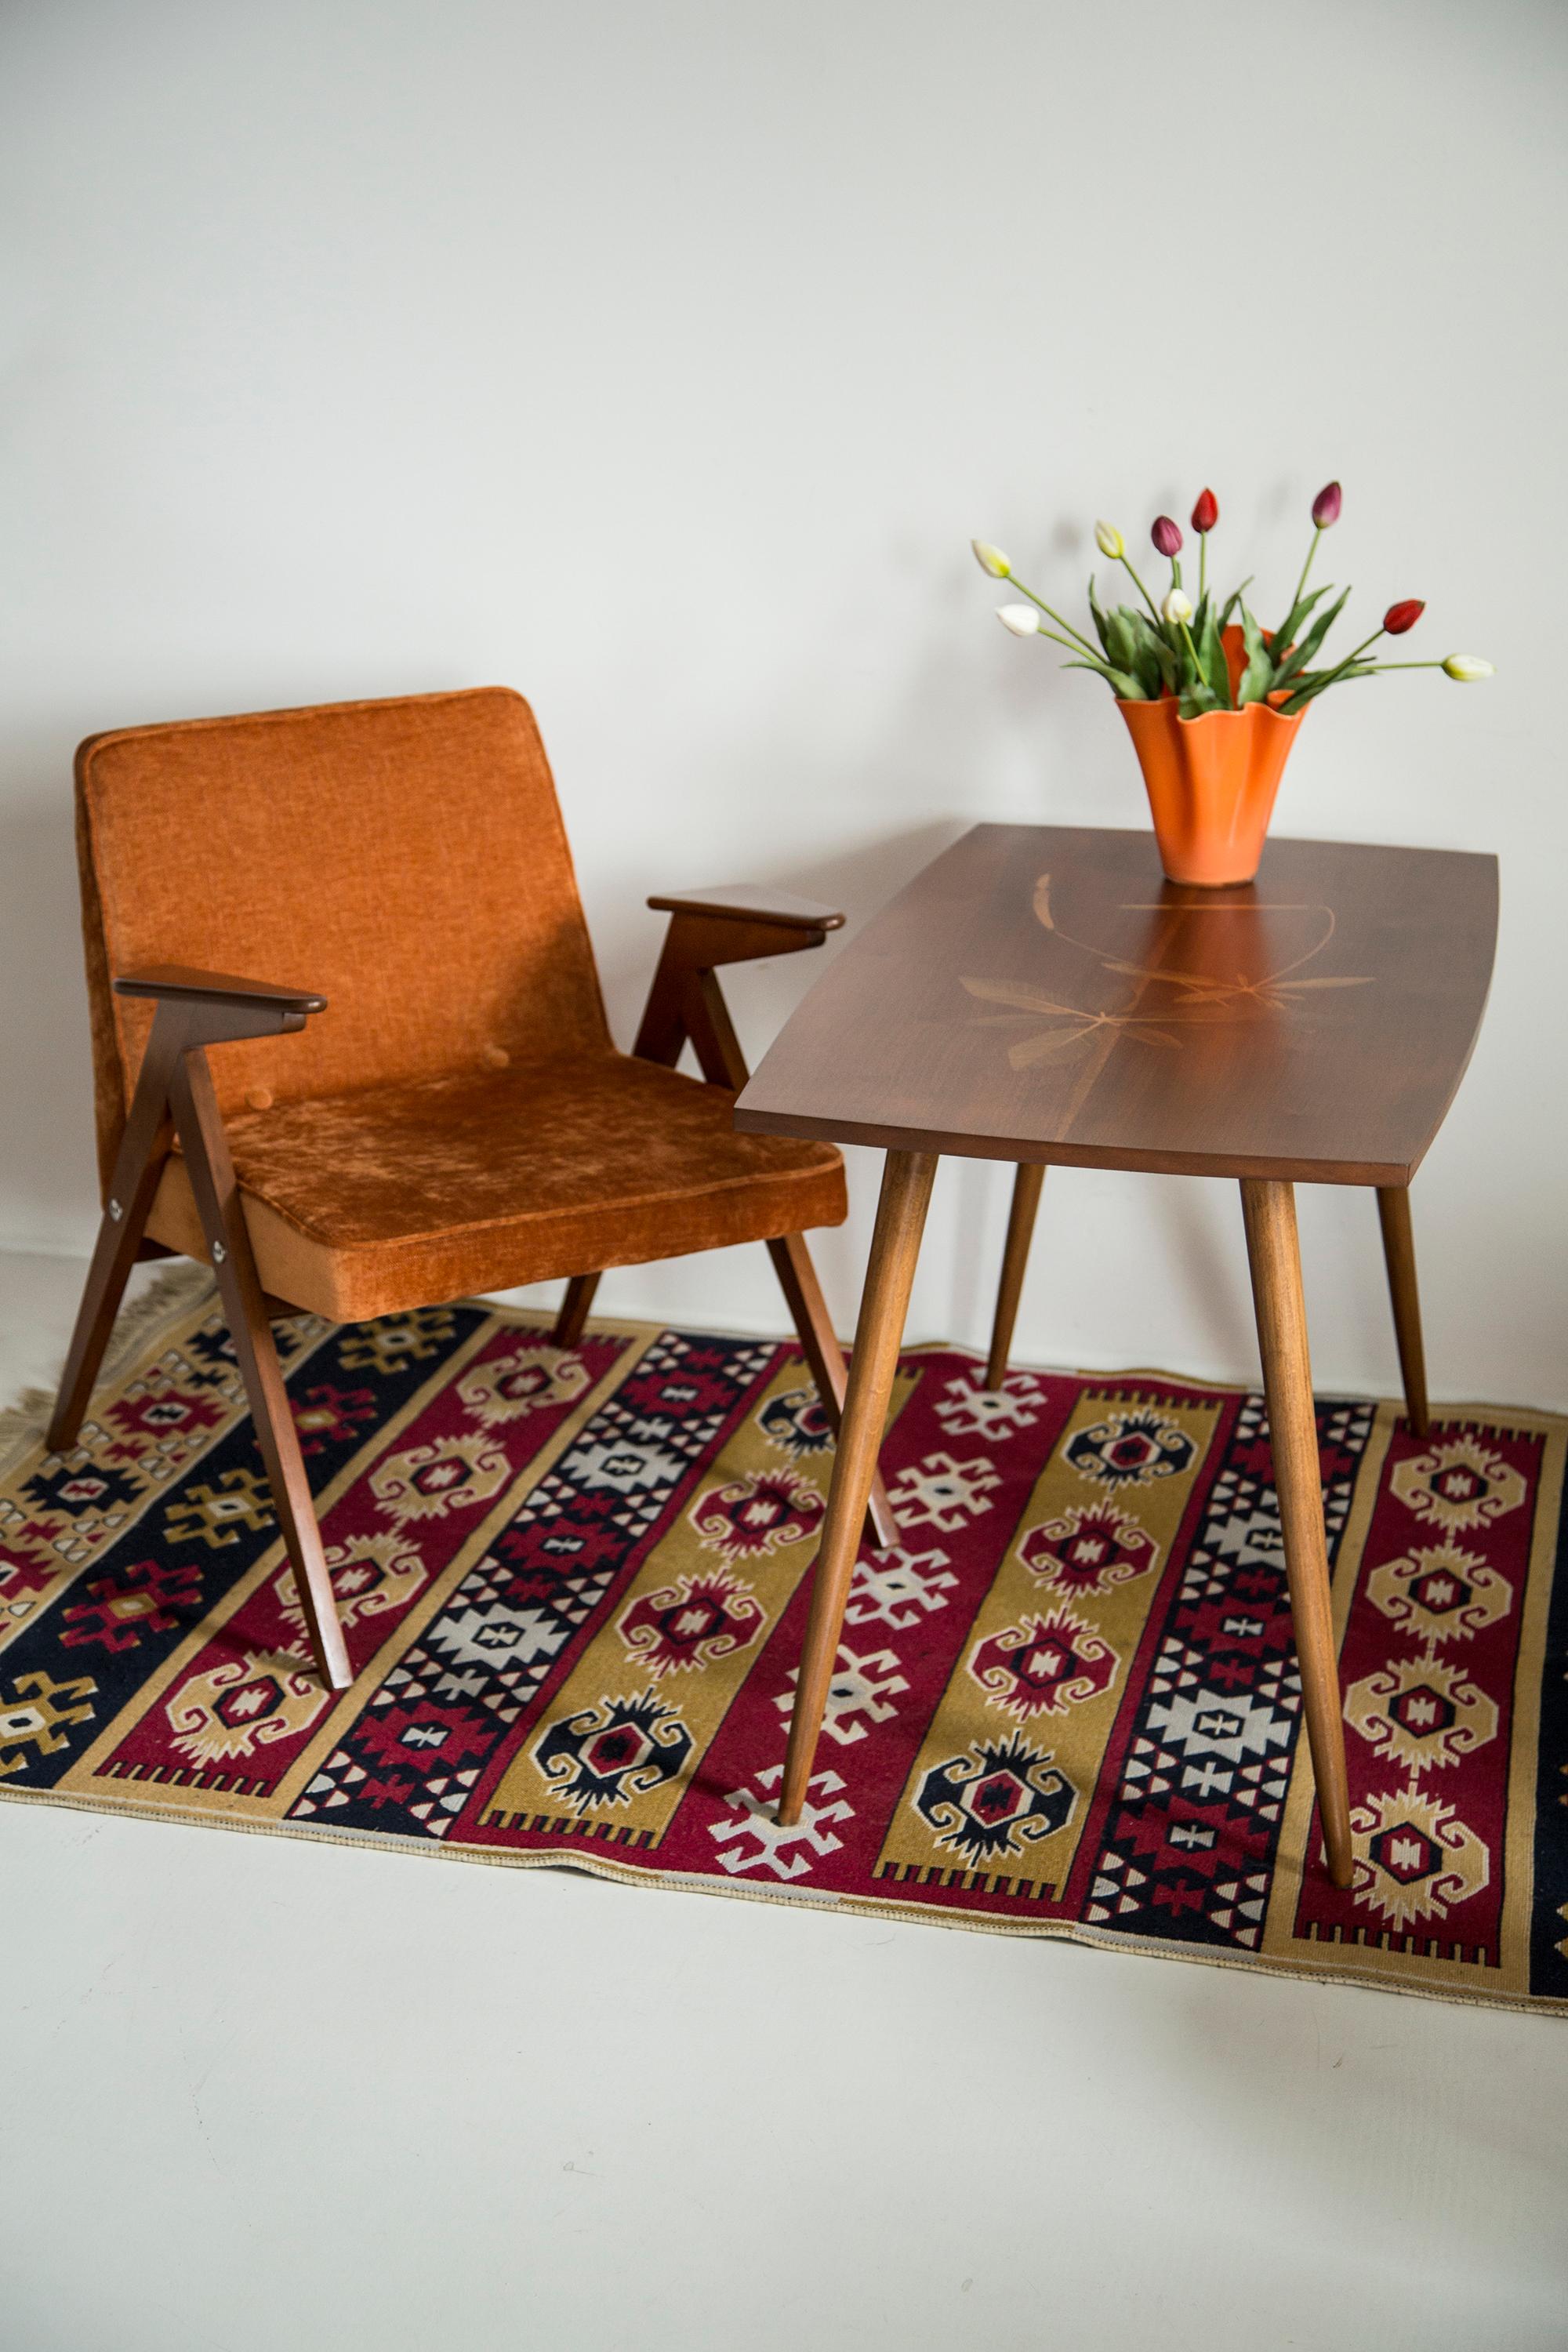 Schöner antiker Tisch aus den 1960er Jahren. Es wurde in den 1960er Jahren in Deutschland hergestellt. Der Tisch wurde aus Holz und Furniersperrholz hergestellt, er wurde aufgefrischt. Sehr guter originaler Vintage-Zustand.